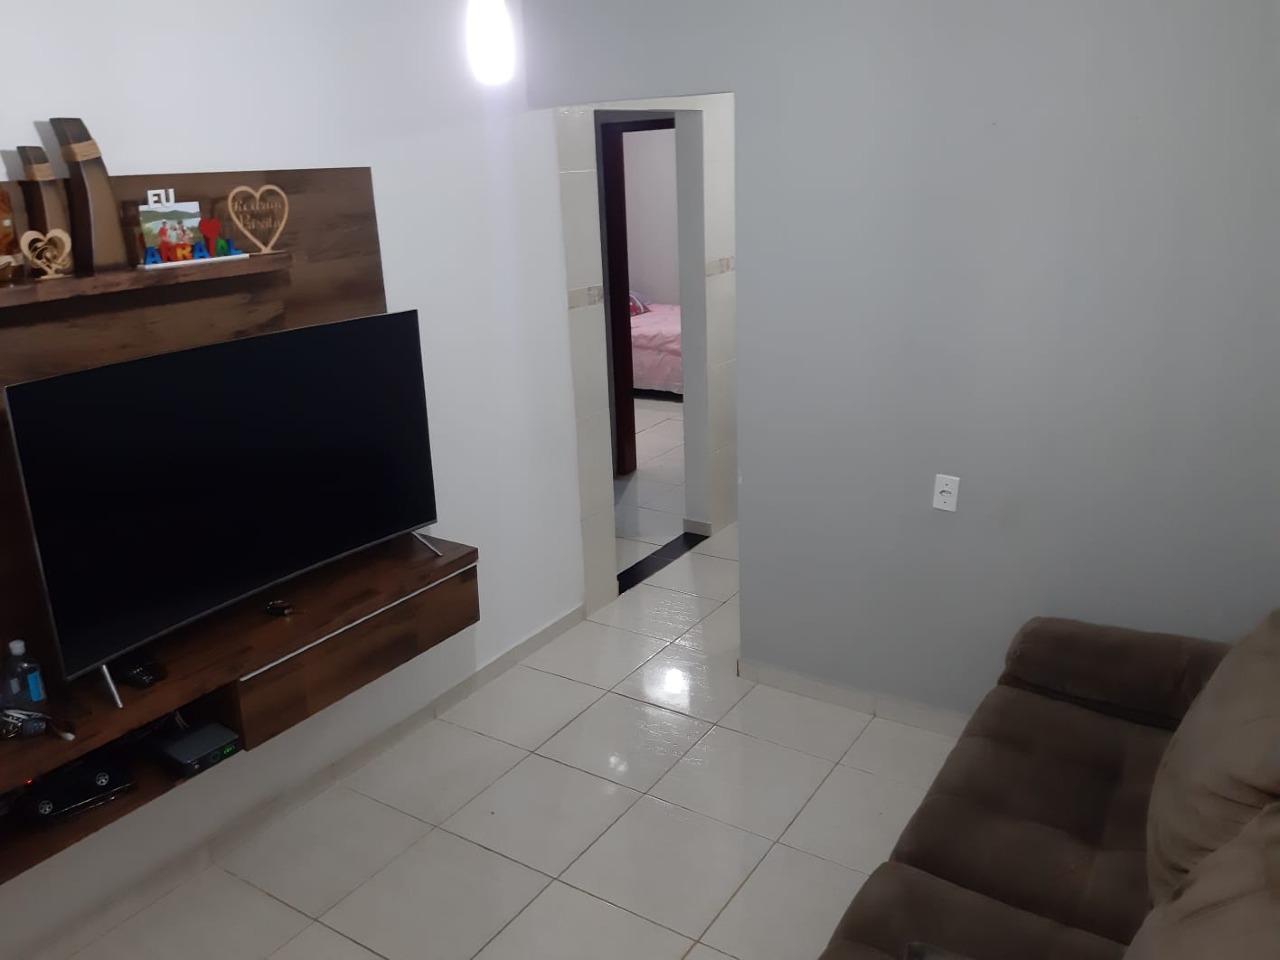 Casa para comprar, 2 quartos, 2 vagas, no bairro Residencial Bom Jardim em Rio das Pedras - SP